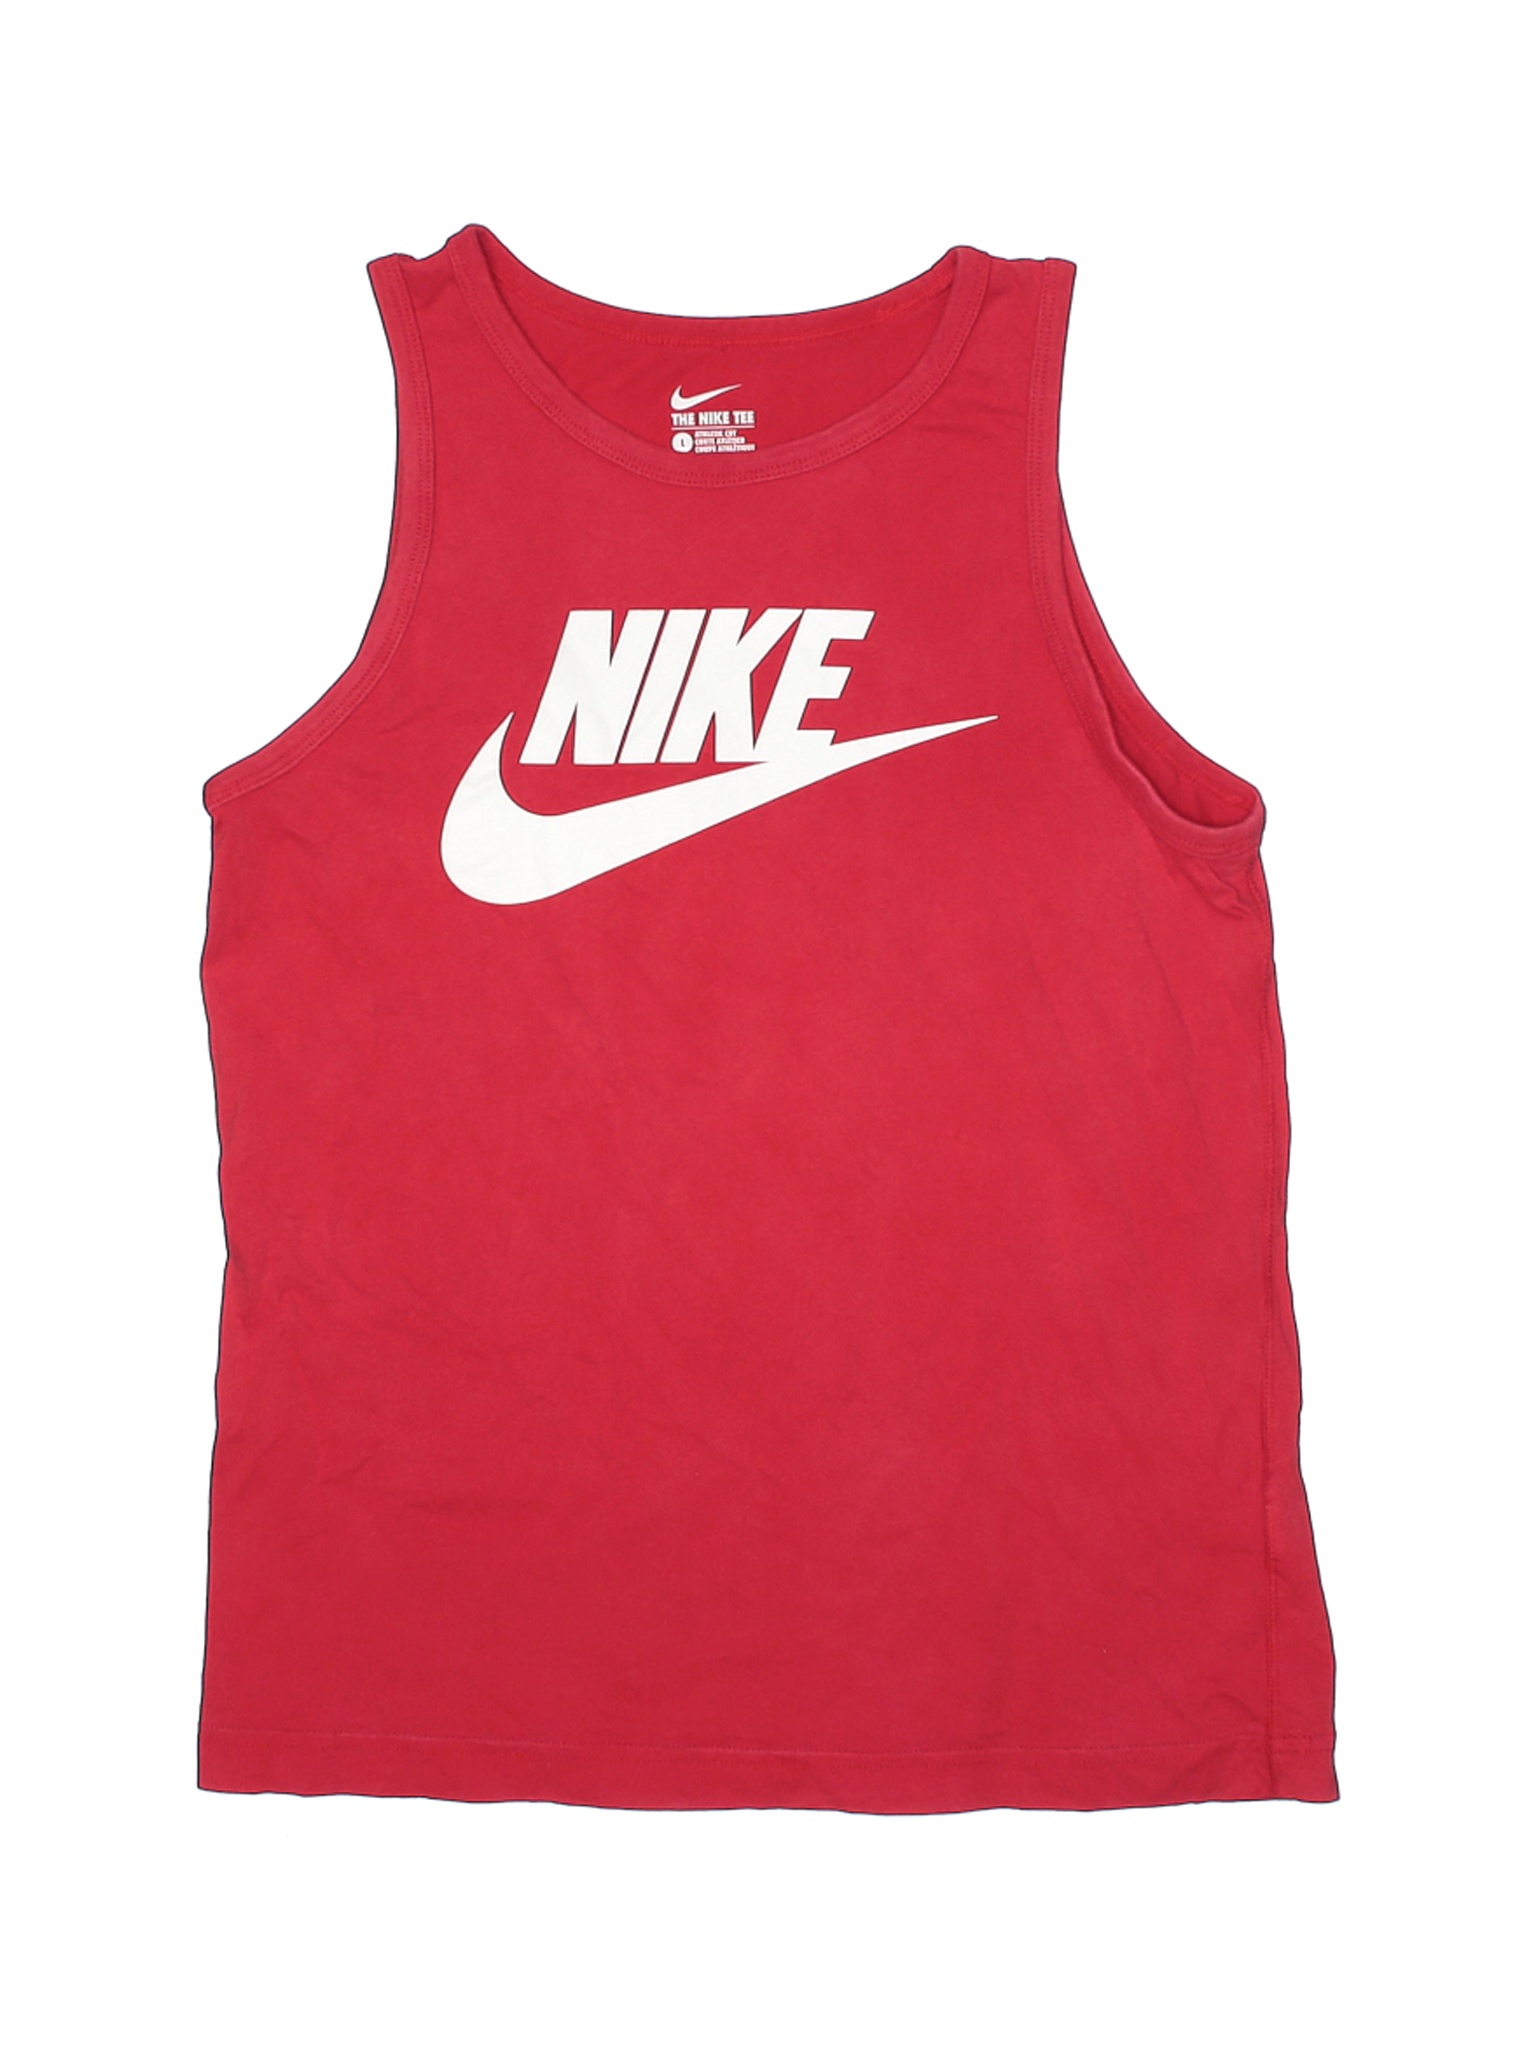 Nike Boys Red Tank Top Large kids | eBay